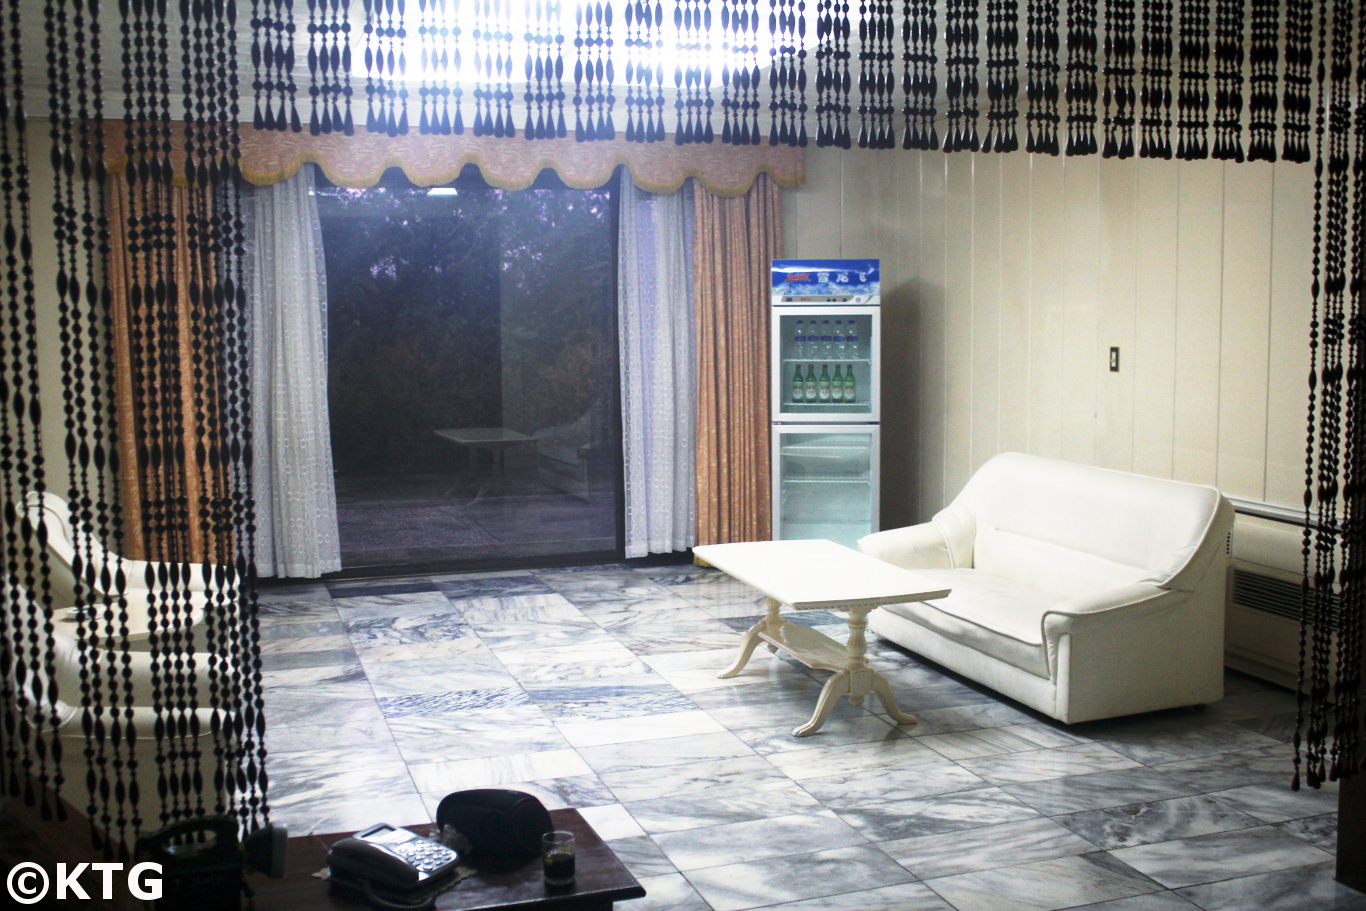 
Sala de estar común en una villa en el Nampo Hot Spa Hotel en el condado de Onchon, cerca de la ciudad de Nampo, Corea del Norte (RPDC). Foto sacada por KTG Tours